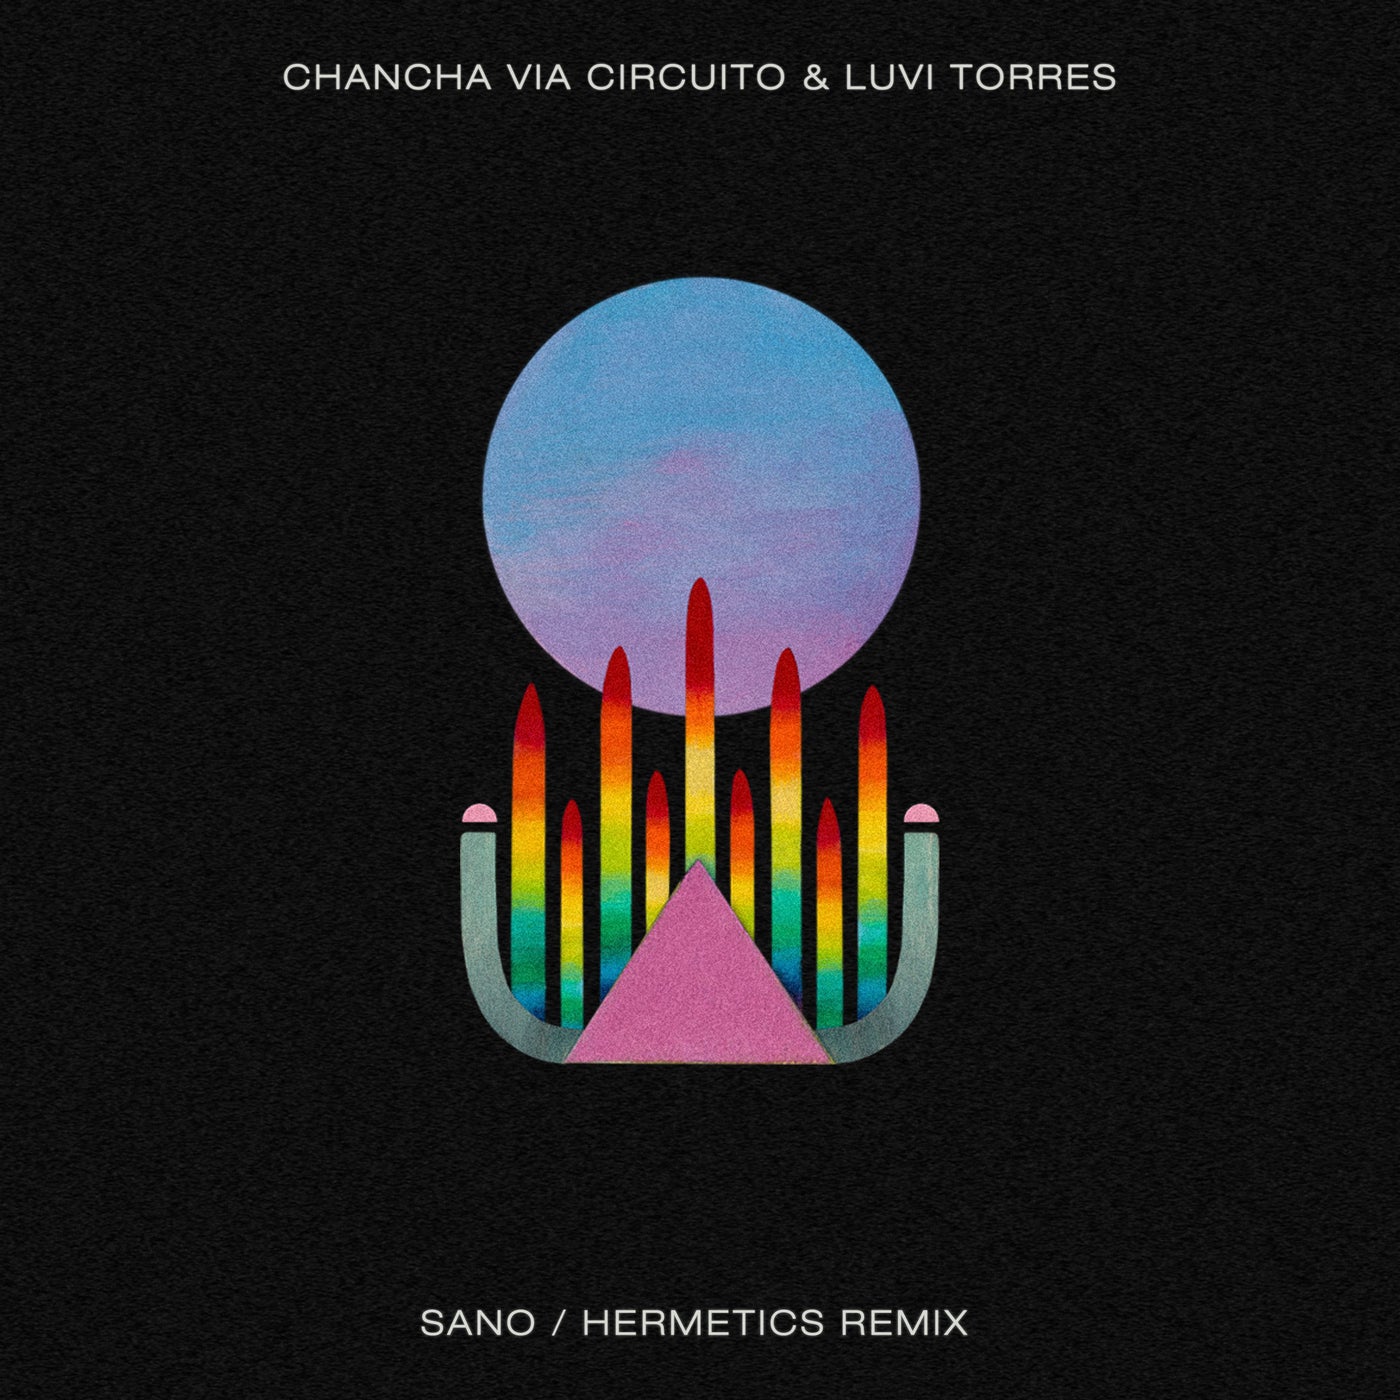 Sano - Hermetics Remix